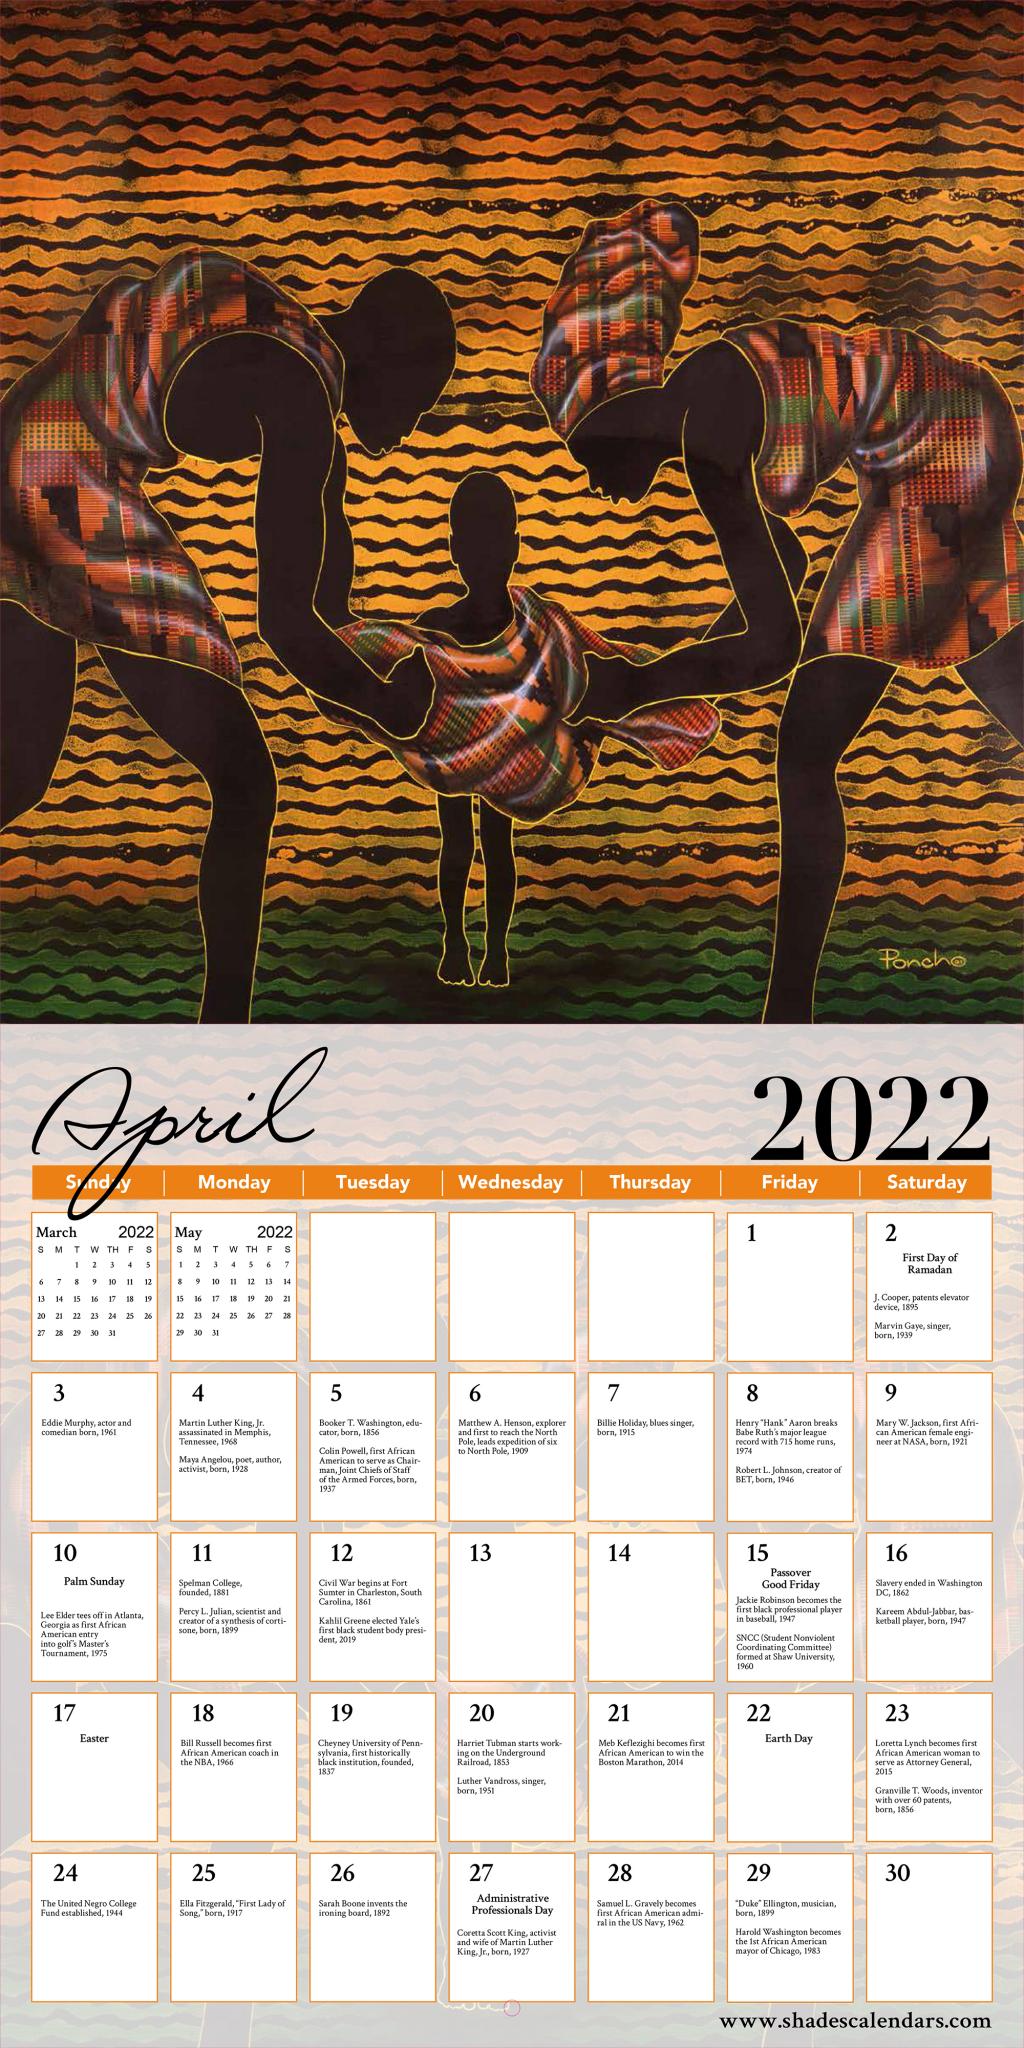 fsu uconn spring calendar African American Calendar 2022 calendar pdf